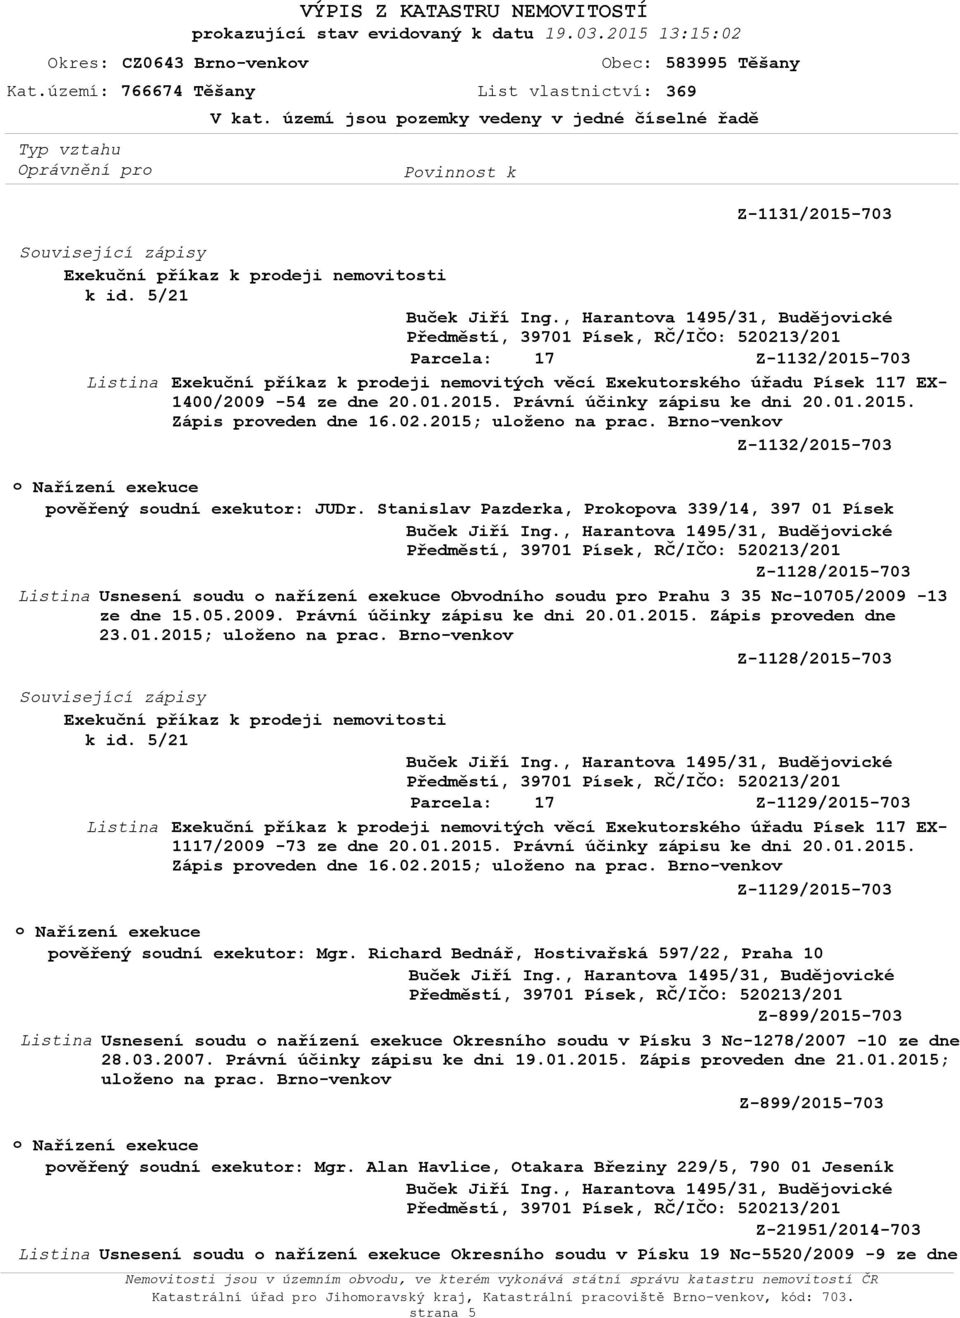 Stanislav Pazderka, Prokopova 339/14, 397 01 Písek Z-1128/2015-703 Usnesení soudu o nařízení exekuce Obvodního soudu pro Prahu 3 35 Nc-10705/2009-13 ze dne 15.05.2009. Právní účinky zápisu ke dni 20.